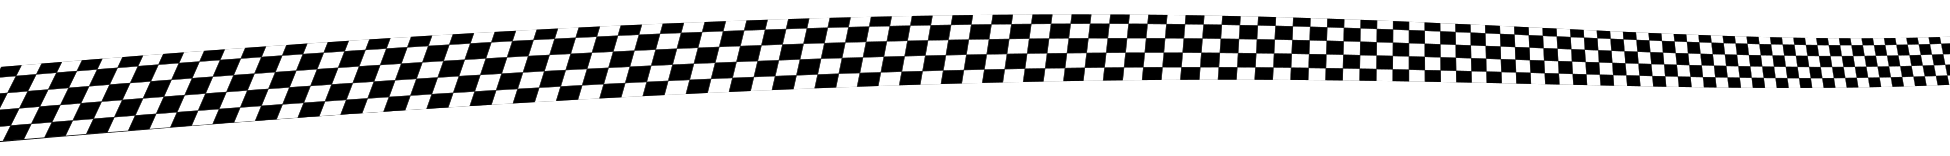 racing checker flag banner